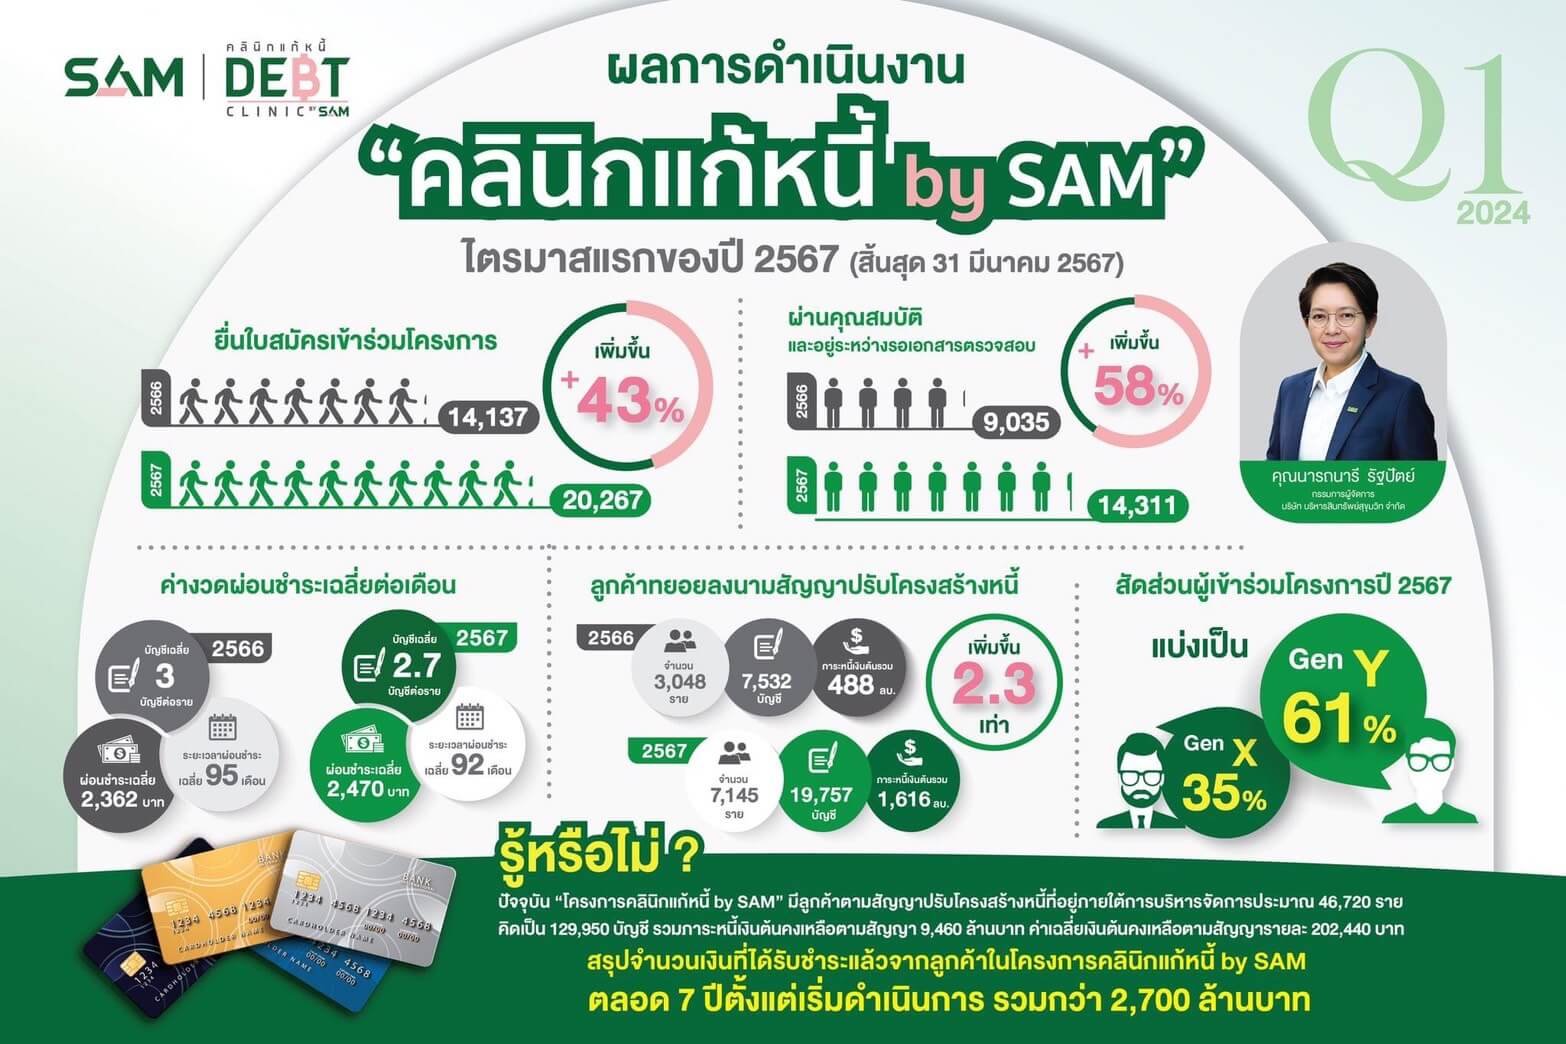 คลินิกแก้หนี้ by SAM สุดปัง! คนไทยแห่สมัครพุ่ง ตัวช่วยลดหนี้ครัวเรือน